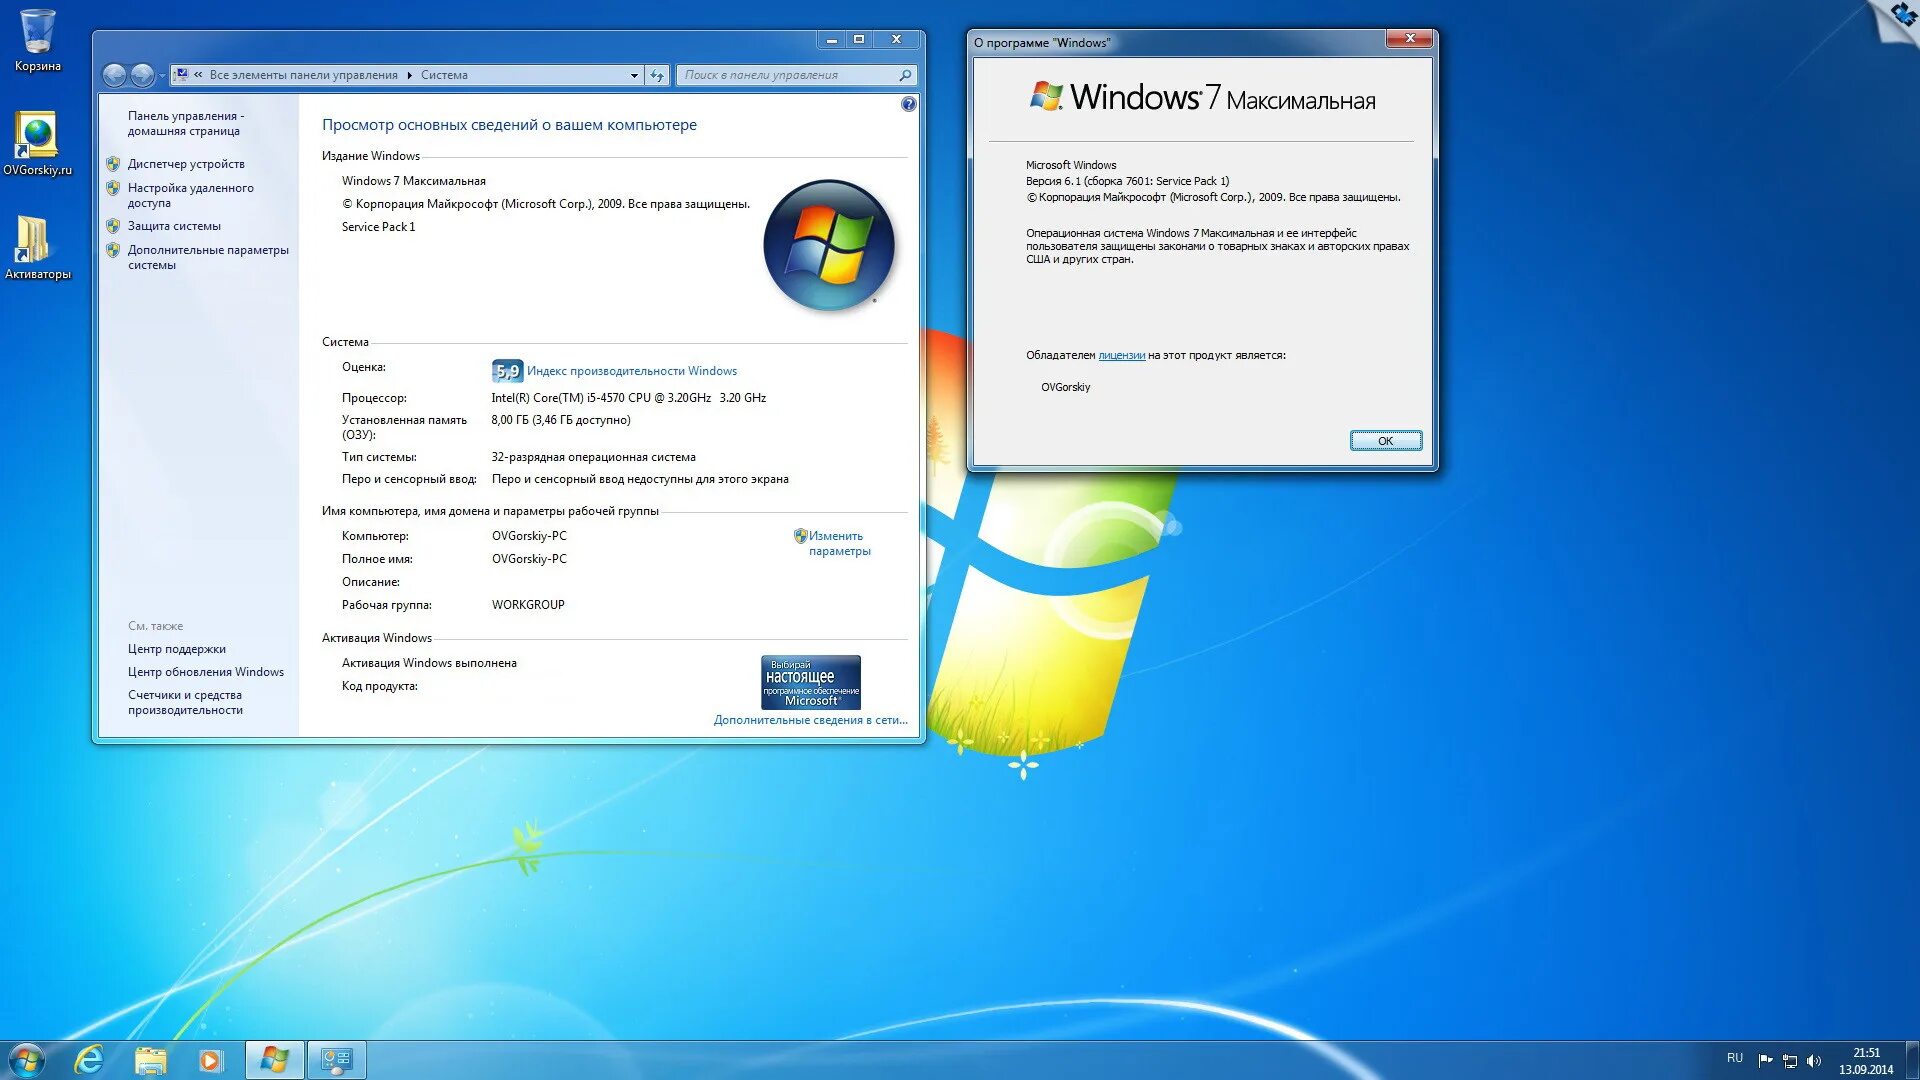 Установочный ОС Windows 7. Характеристики ОС Windows 7. Windows 7 максимальная. Windows 7 максимальная компьютер.